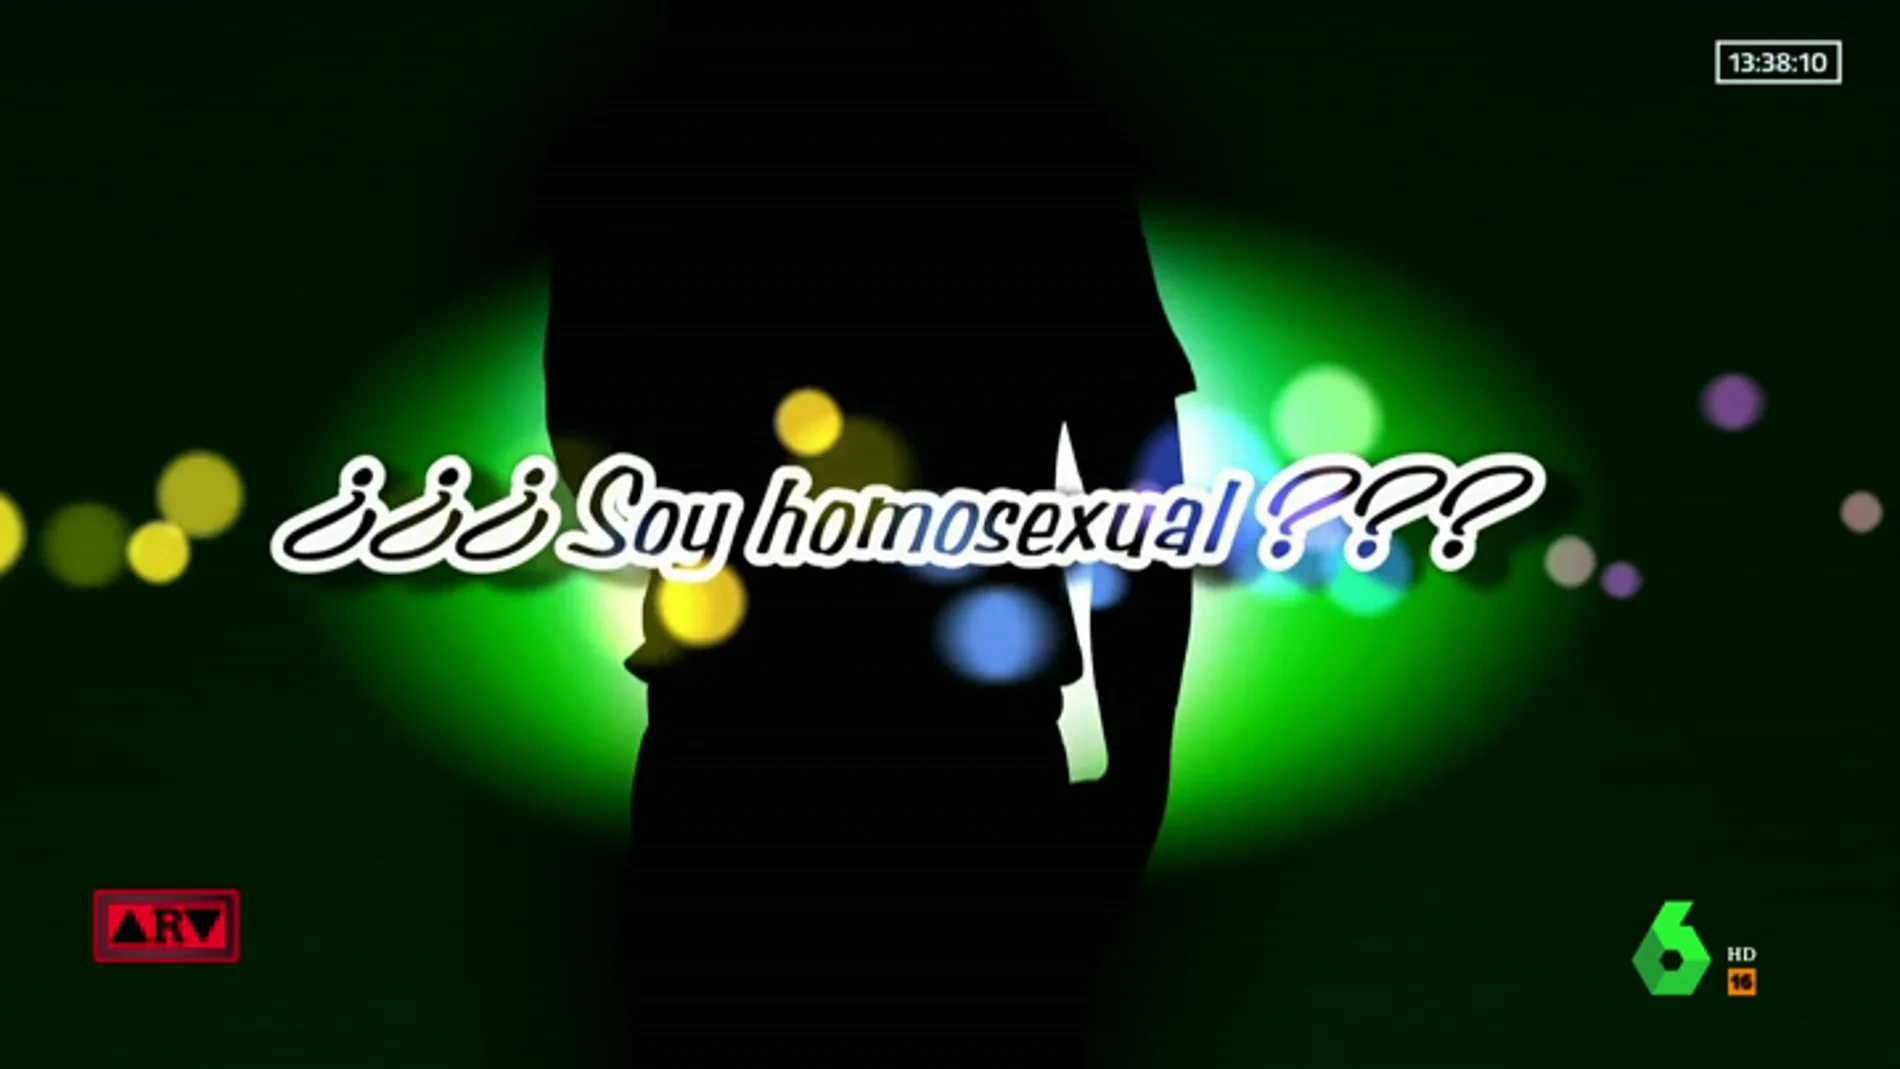 VIDEO HOMOSEXUALIDAD OK